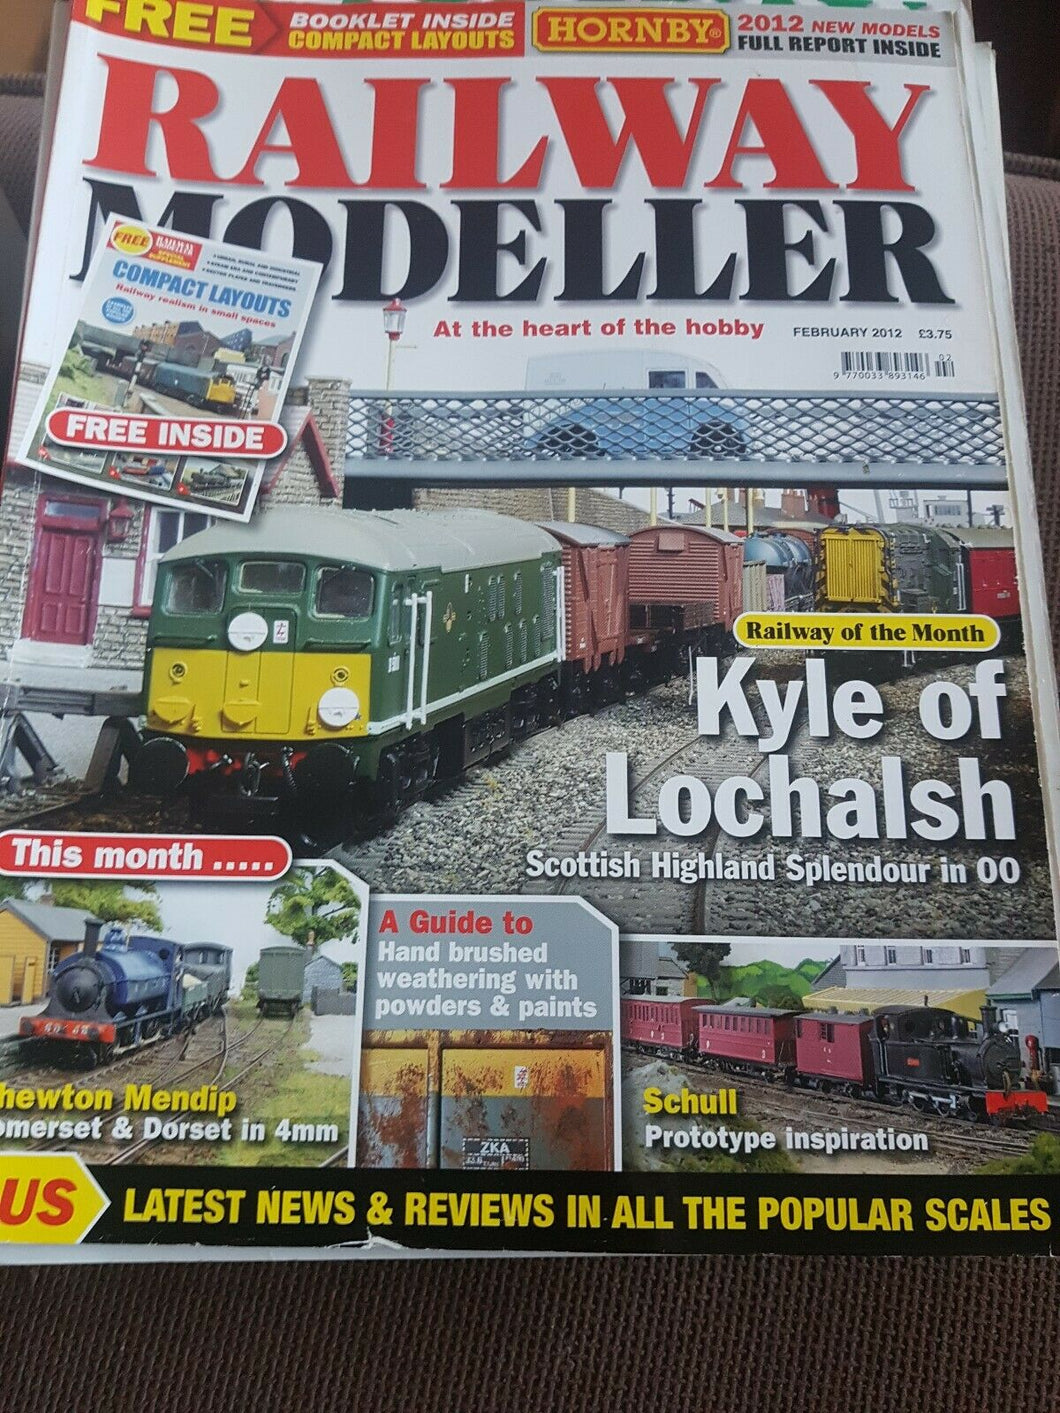 Railway modeller magazine February 2012